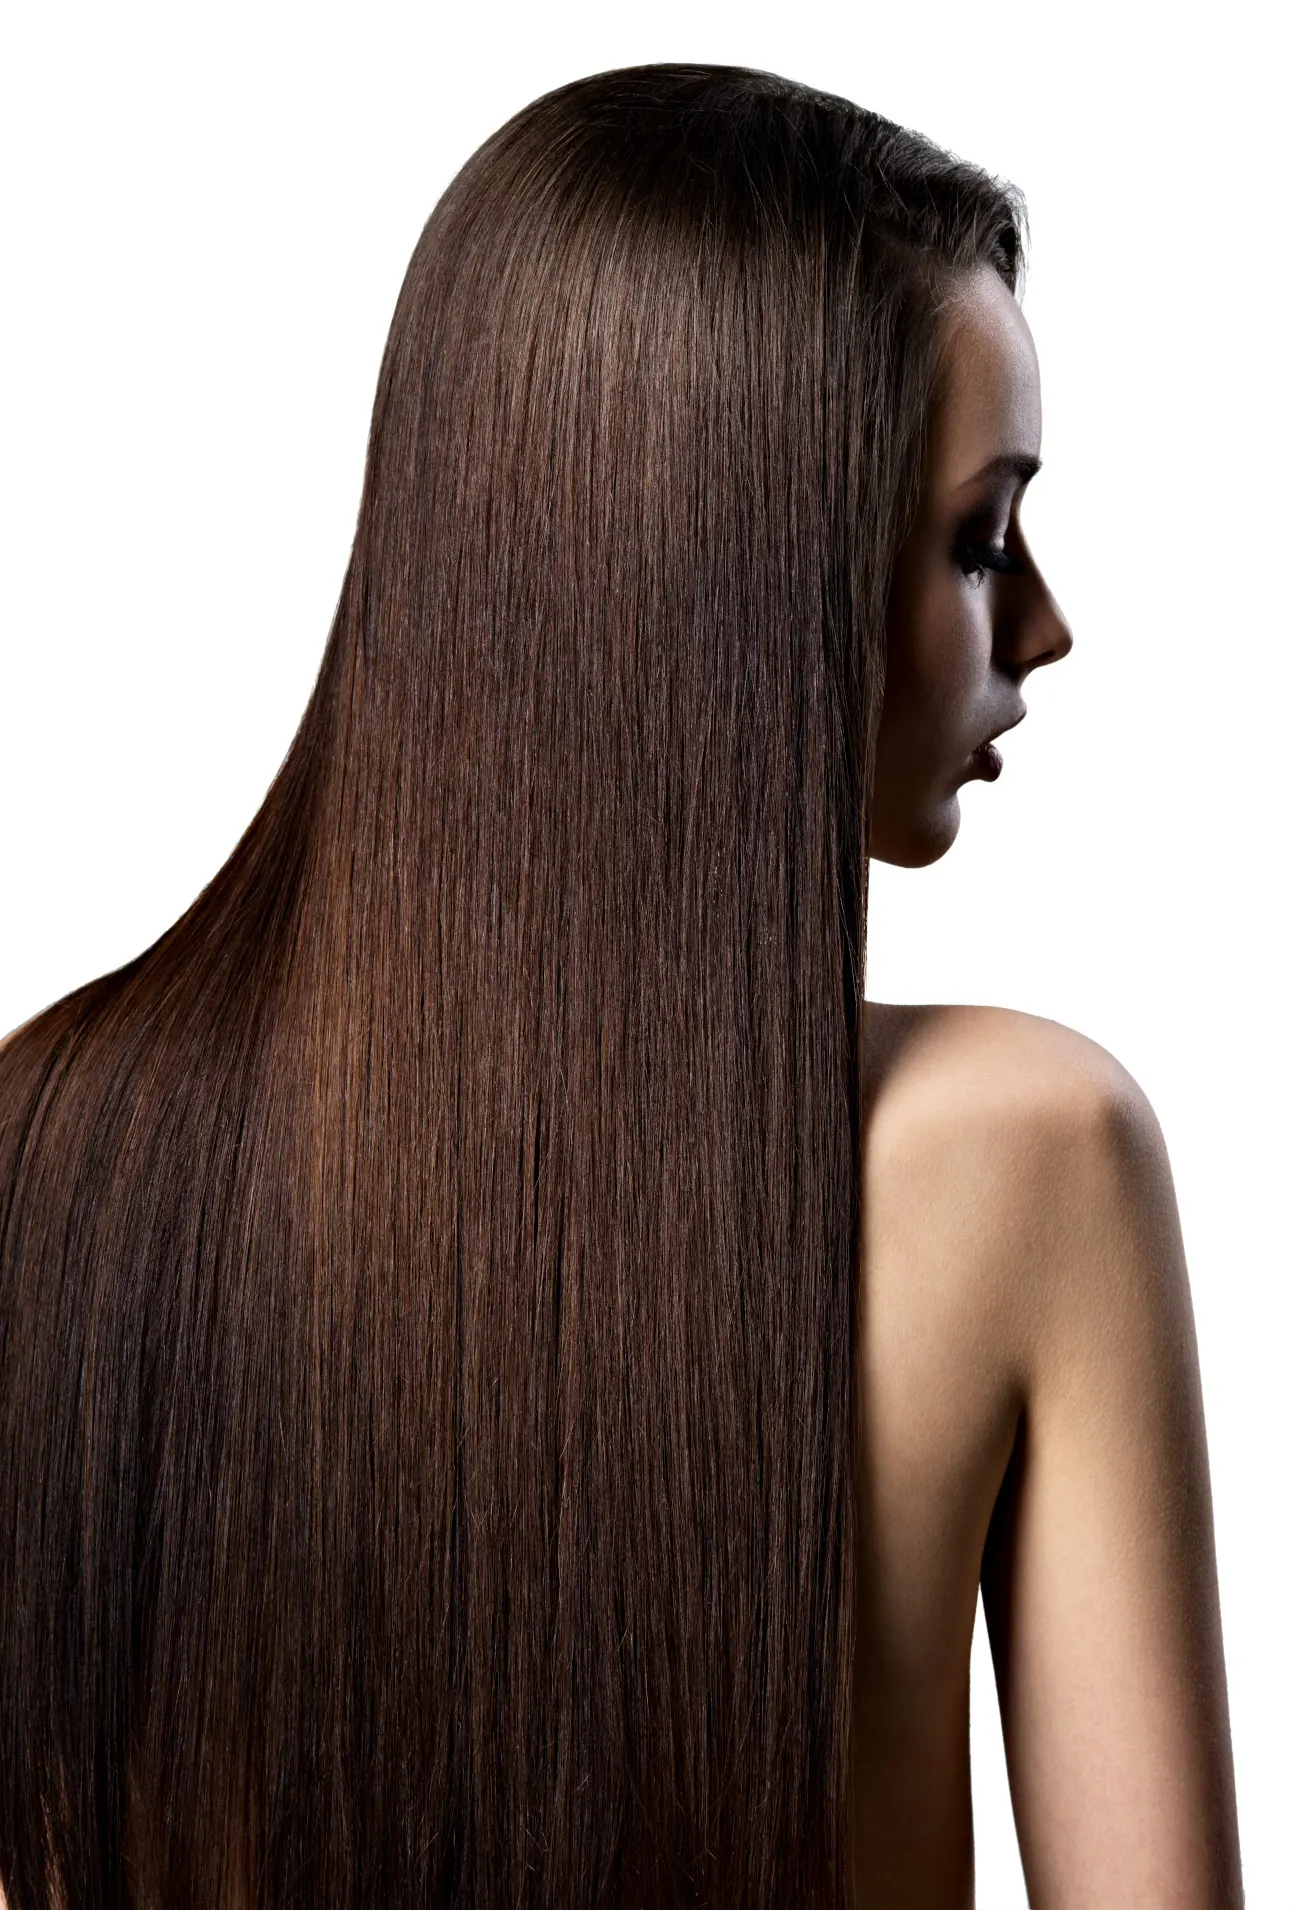 Włosy słowiańskie zwykłe i dziewicze - różnica | Baza wiedzy HairMe